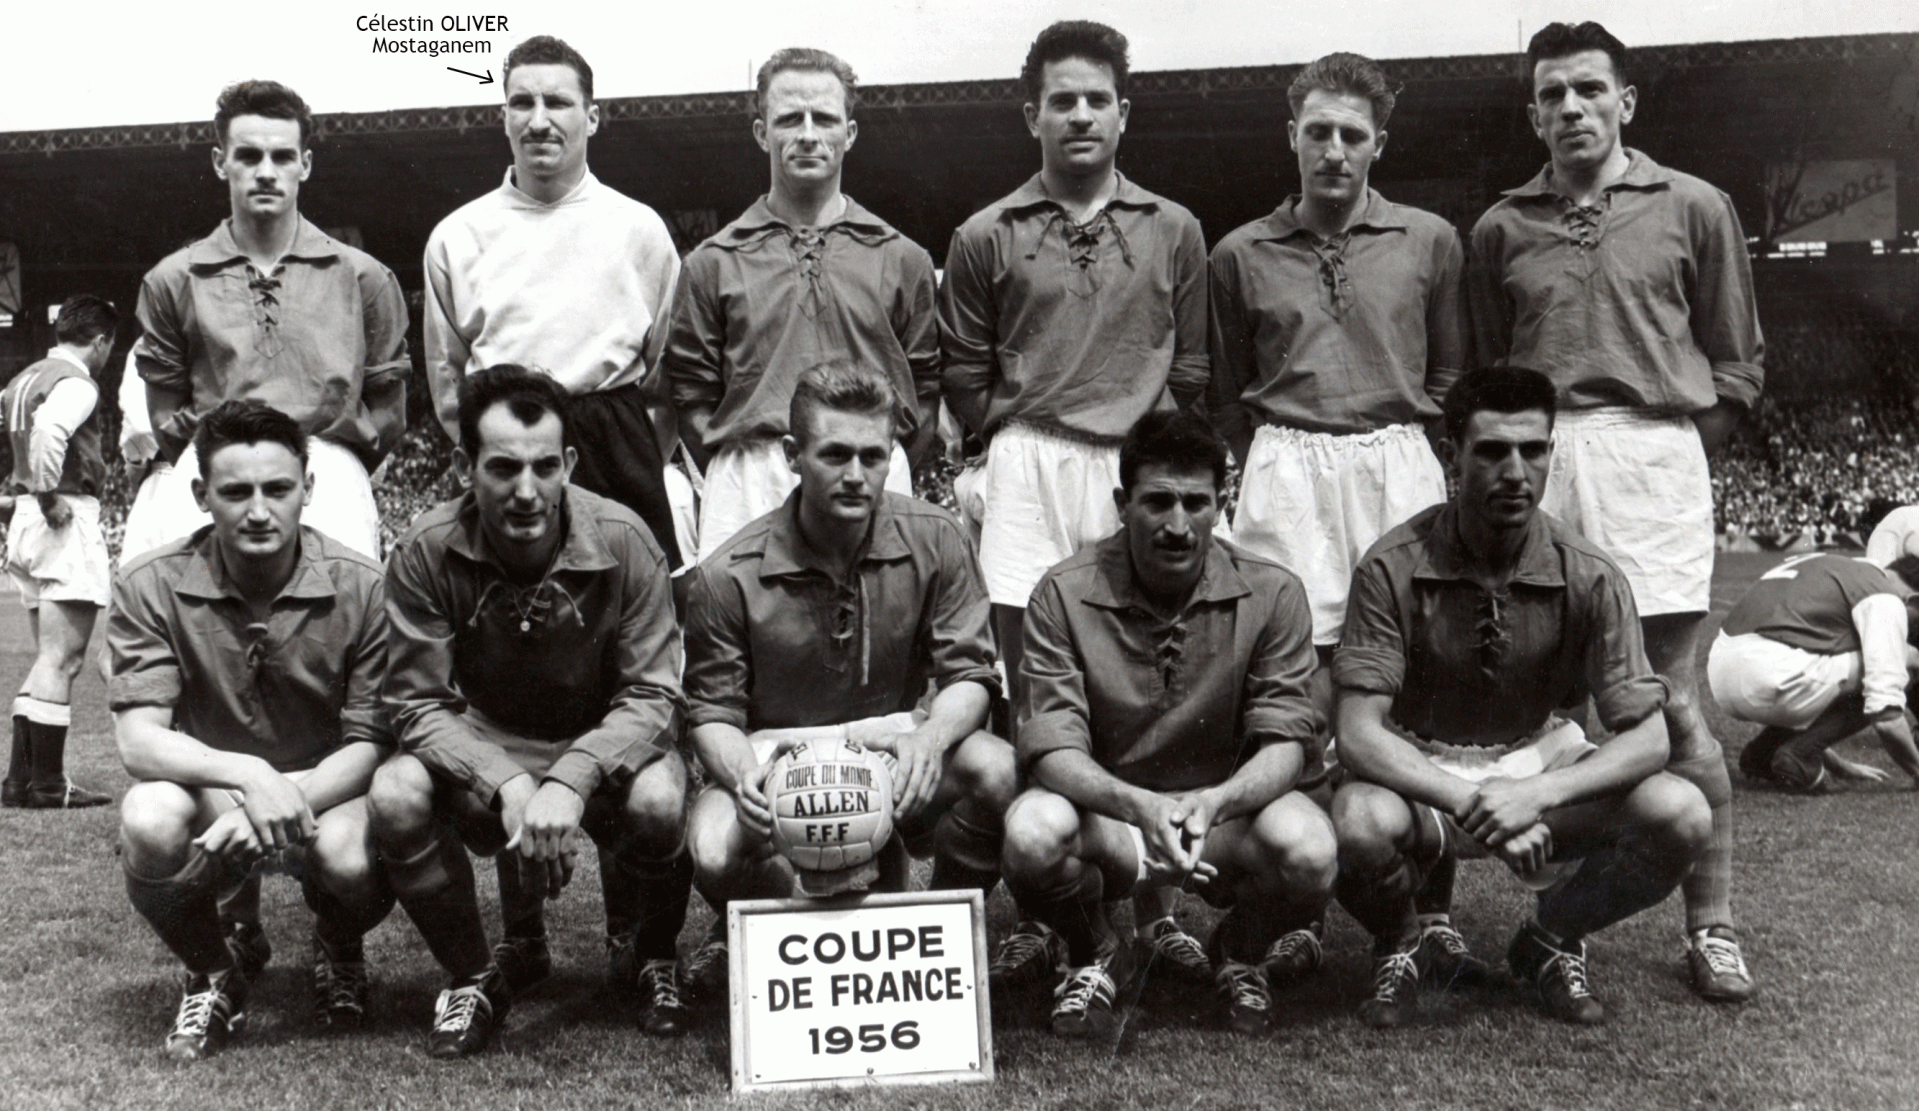 Coupe de France 1956